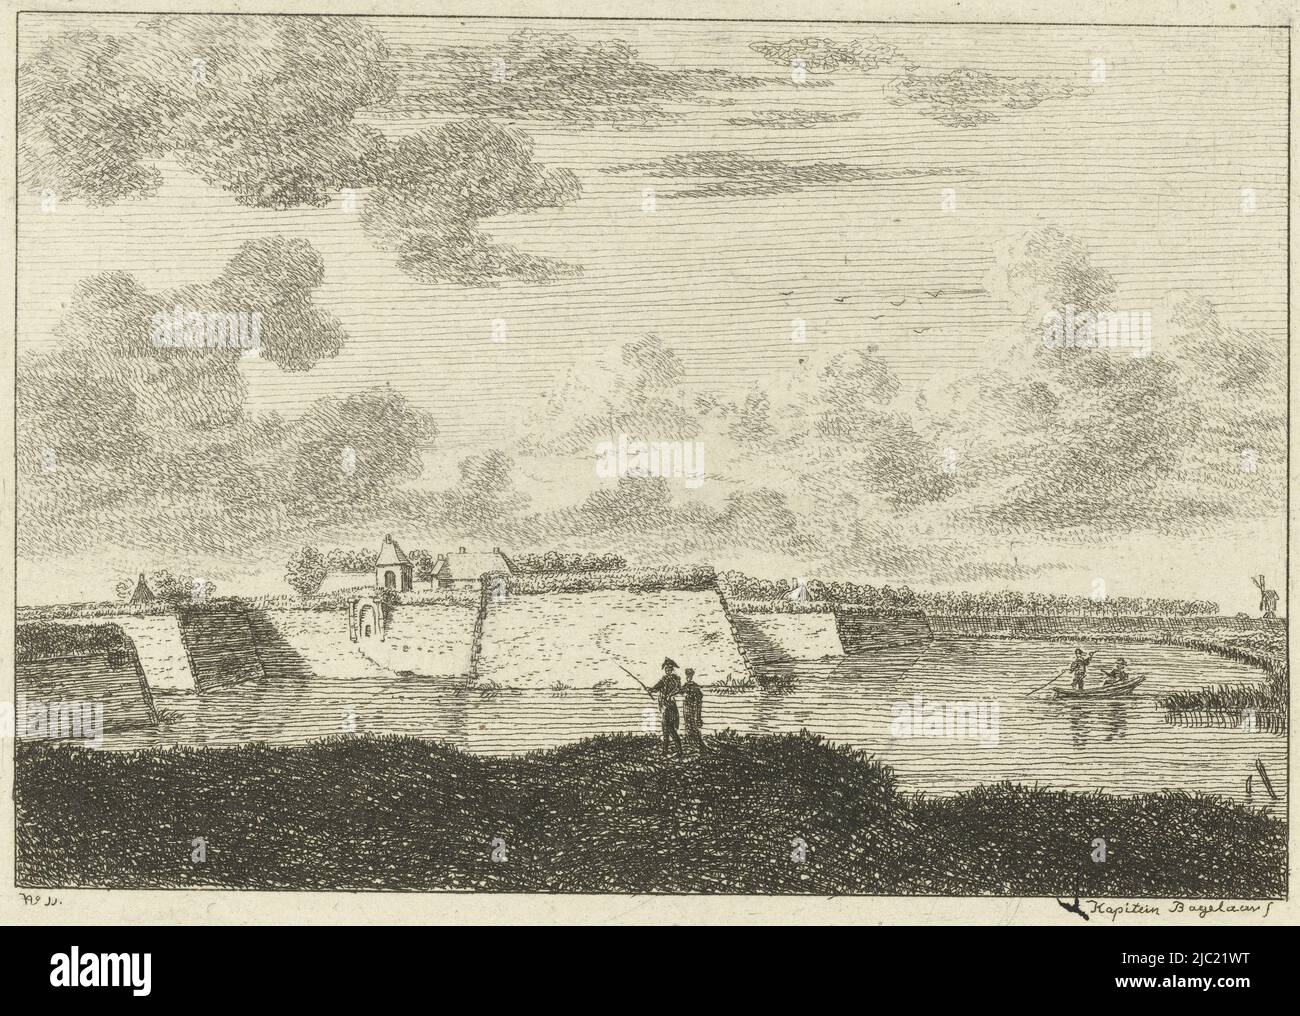 Vista dei bastioni a Naarden, Olanda., tipografia: Ernst Willem Jan Bagelaar, (menzionato sull'oggetto), Paesi Bassi, 1798 - 1837, carta, incisione, h 93 mm x l 126 mm Foto Stock